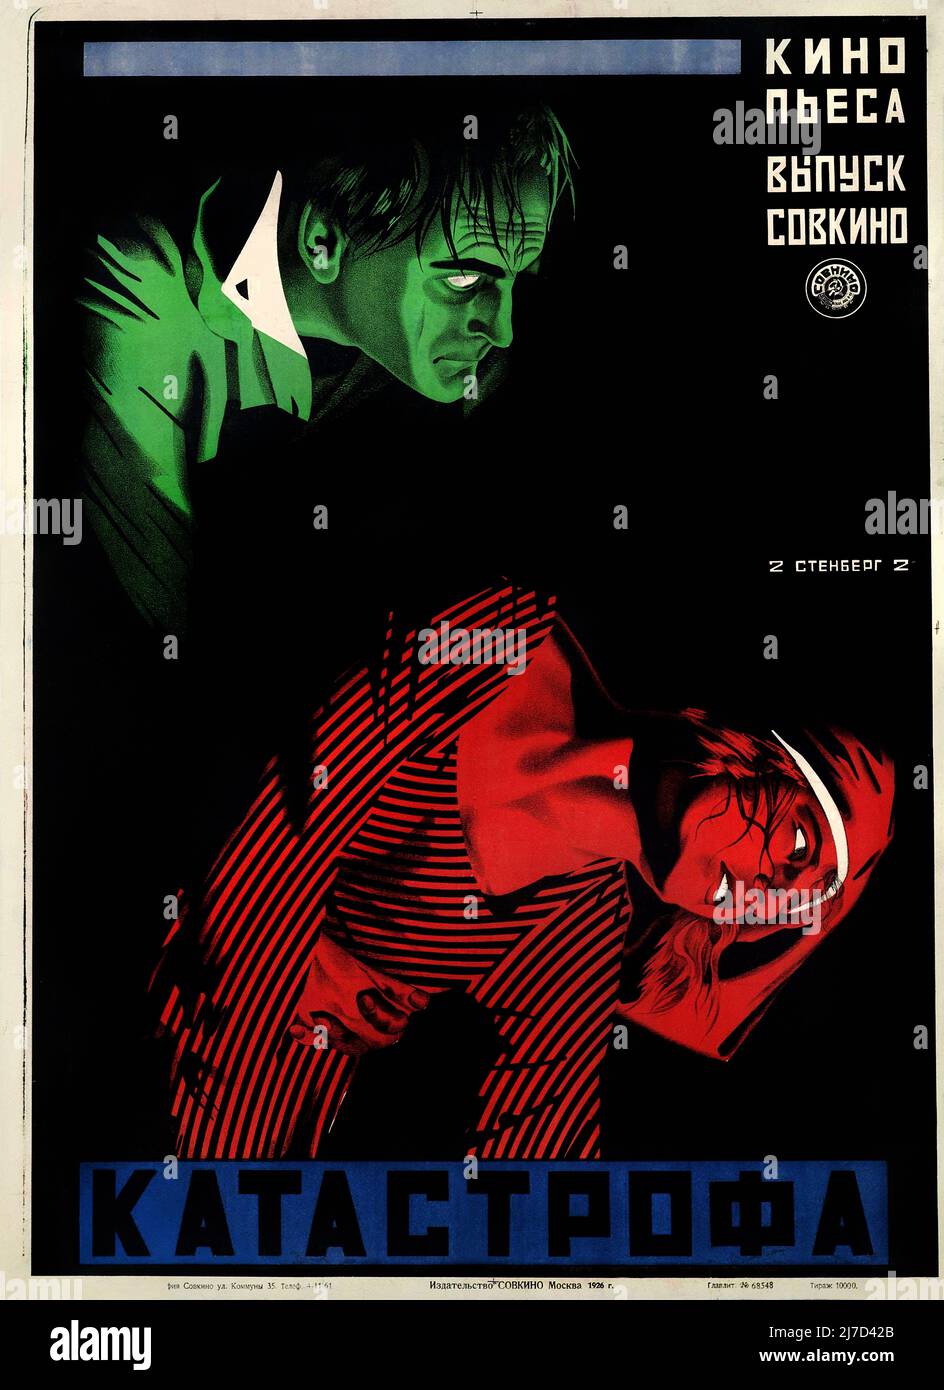 Jahrgang 1920s Soviet Avant-Garde Filmplakat für Katastrophe 1926 - Poster von den Stenberg Brothers - Vladimir Stenberg, Georgii Stenberg Stockfoto